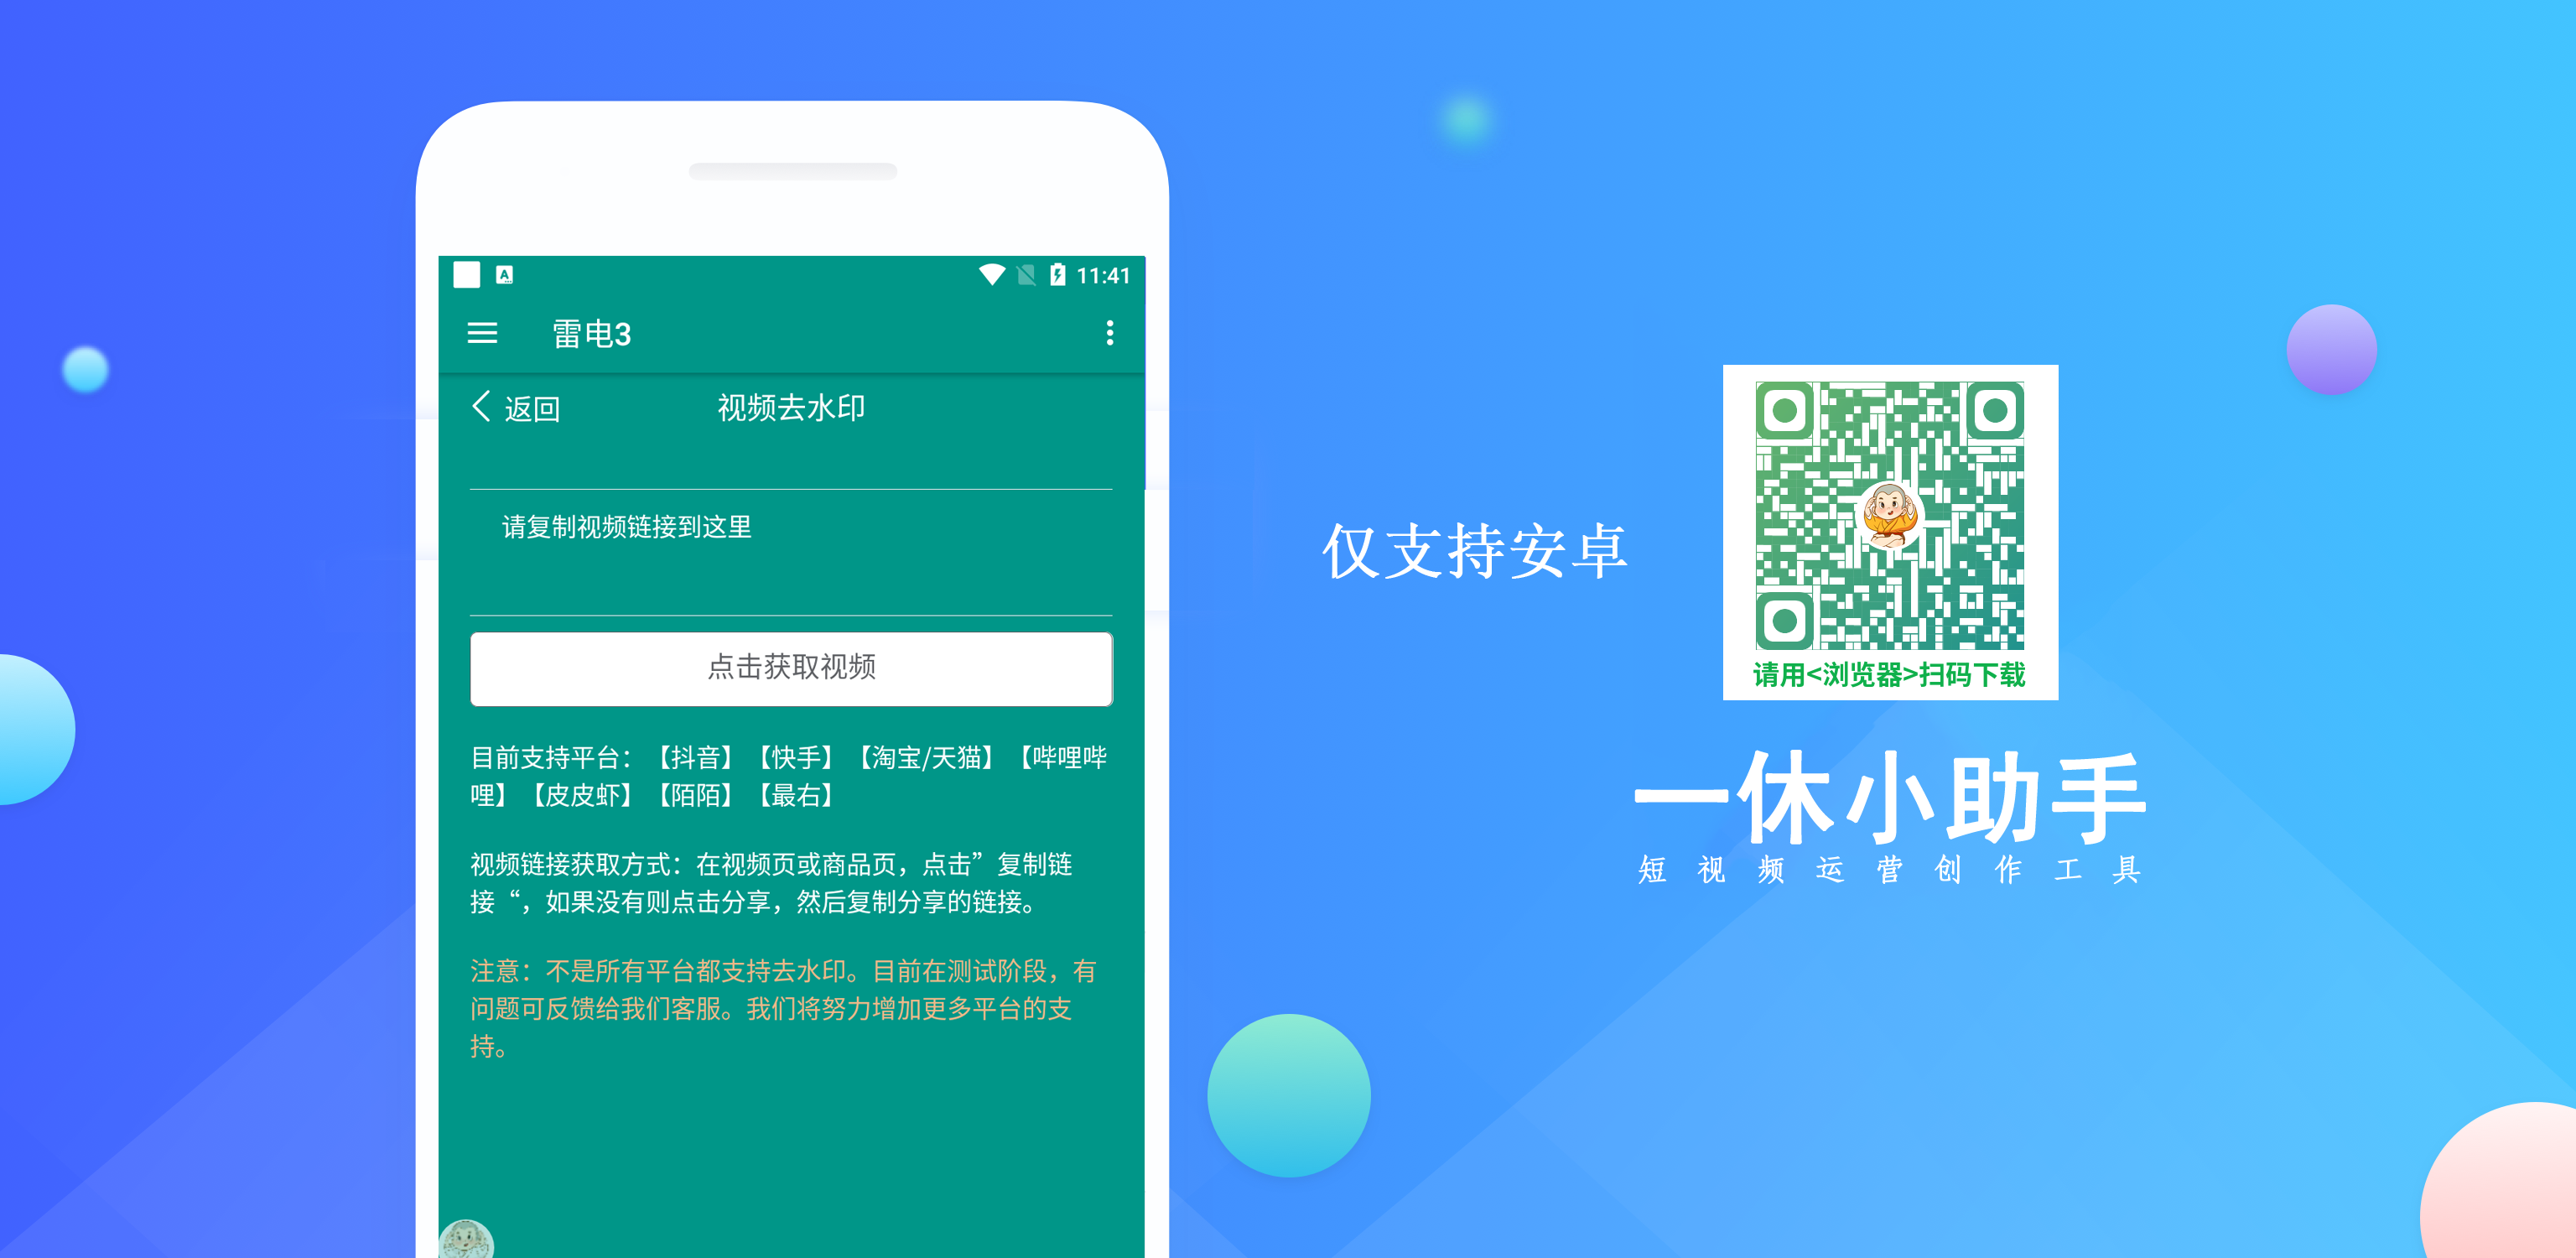 知游小助手官方下载-知游小助手 app 最新版本免费下载-应用宝官网